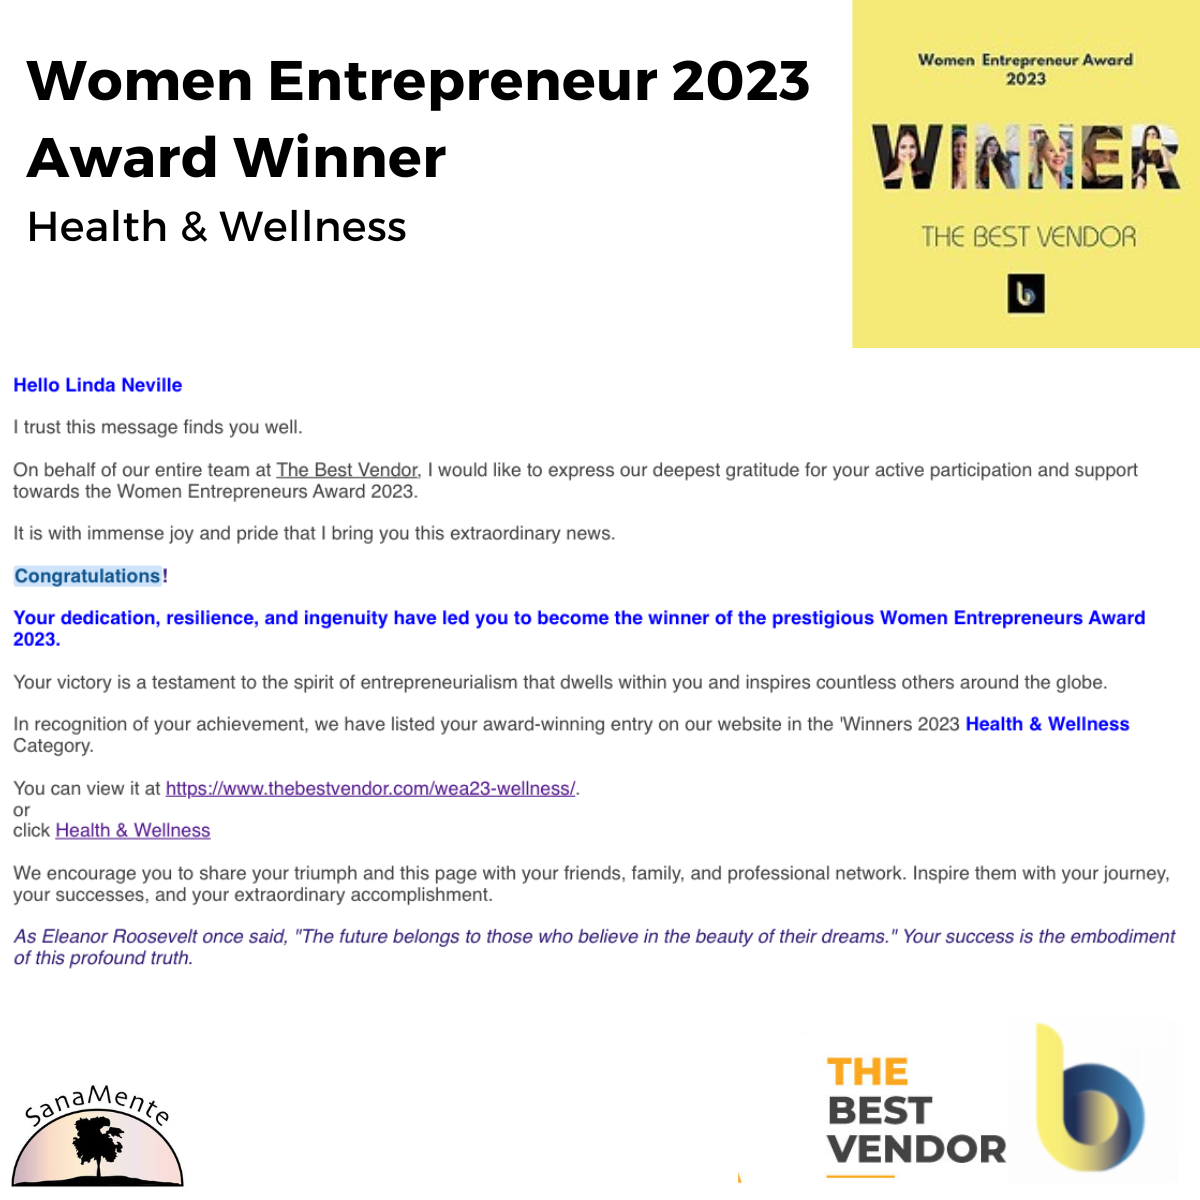 Email from The Best Vendor Announcing Linda Neville Winning Women Entrepreneur 2023